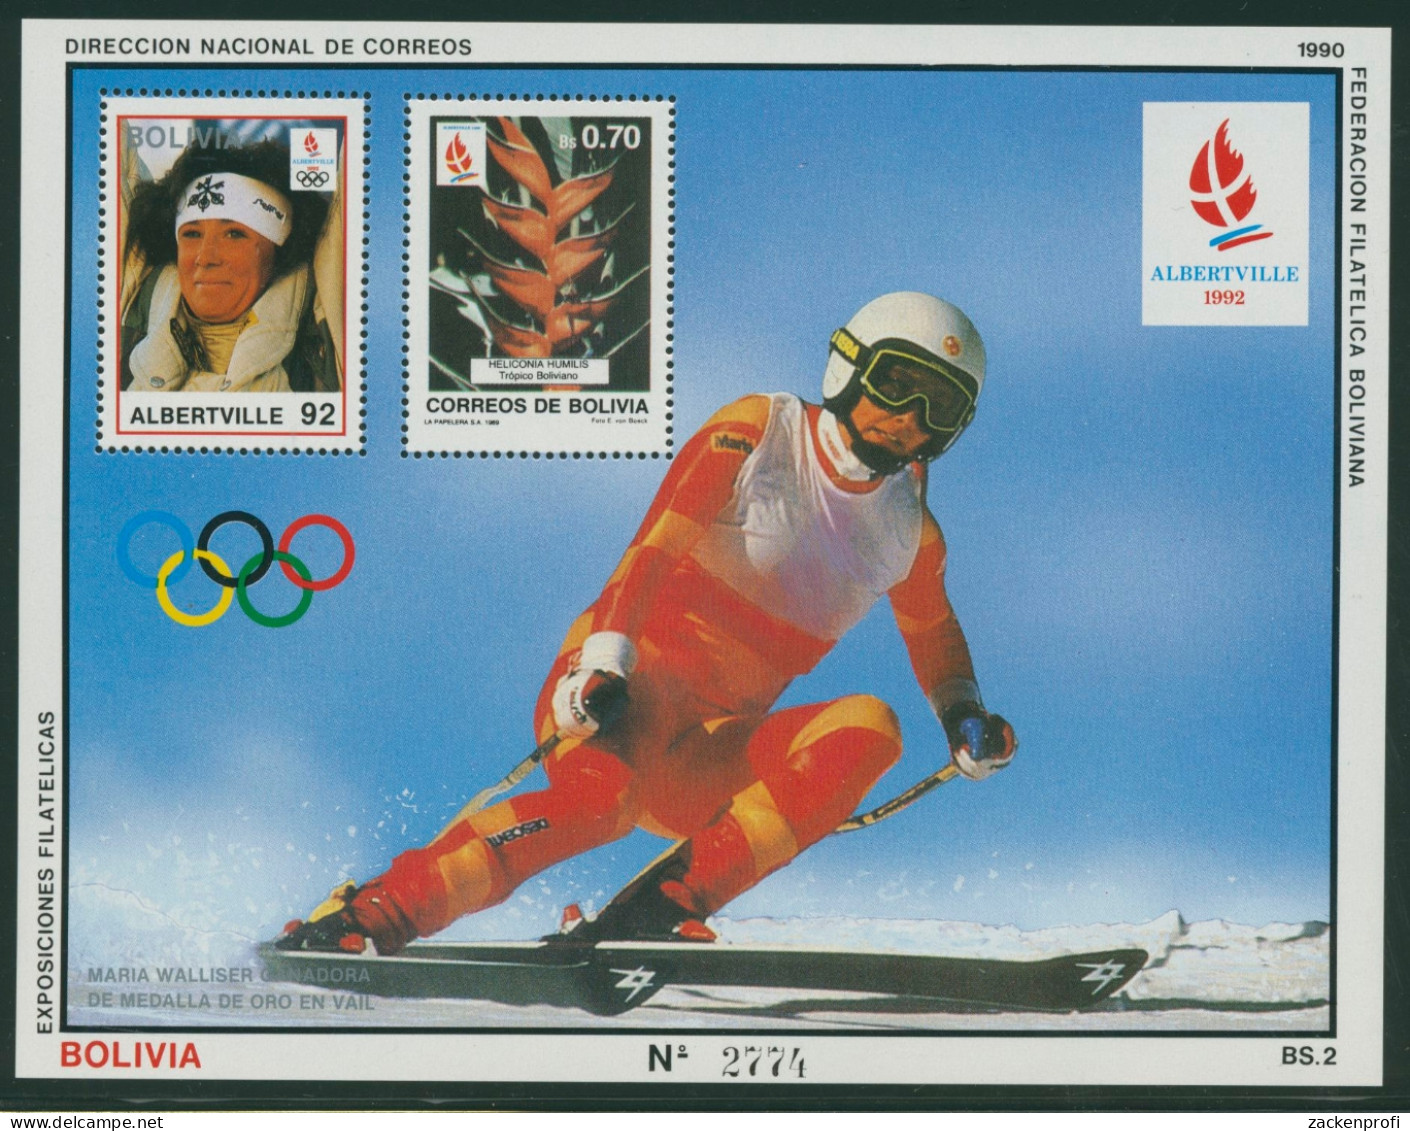 Bolivien 1990 Olympische Winterspiele Albertville Block 193 Postfrisch (C22894) - Bolivien